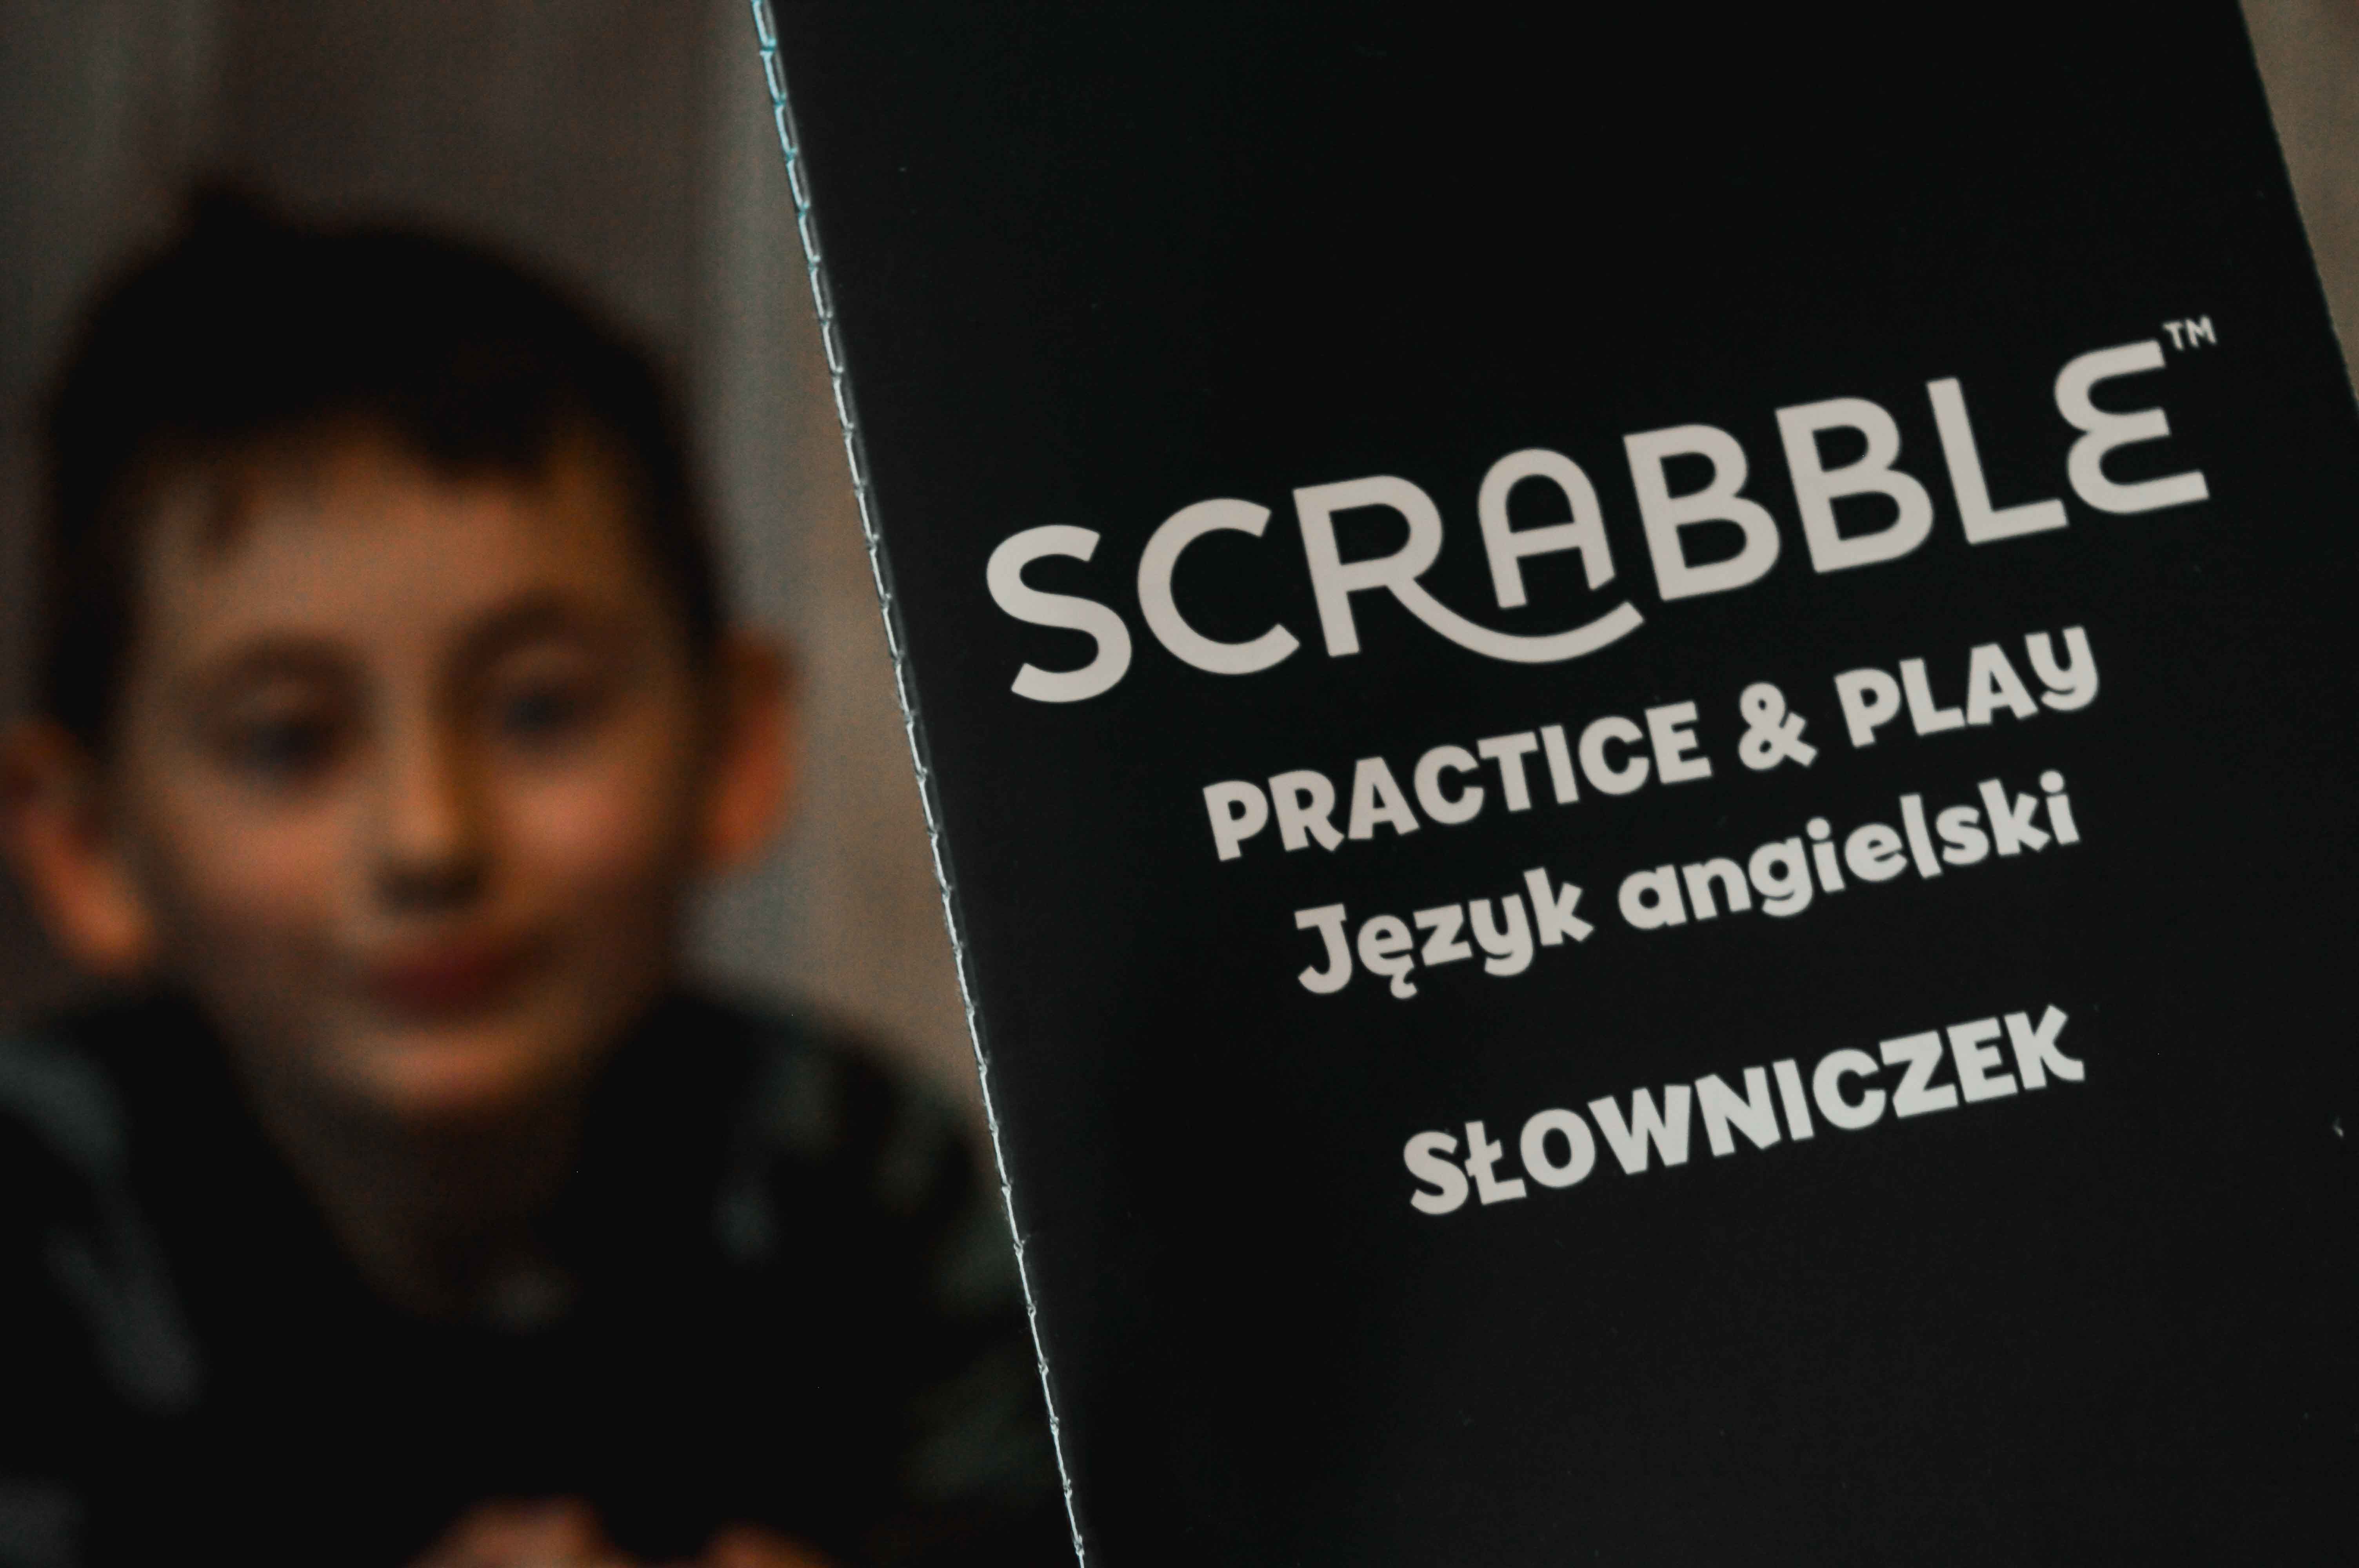 scrabble w języku angielskim dla dzieci